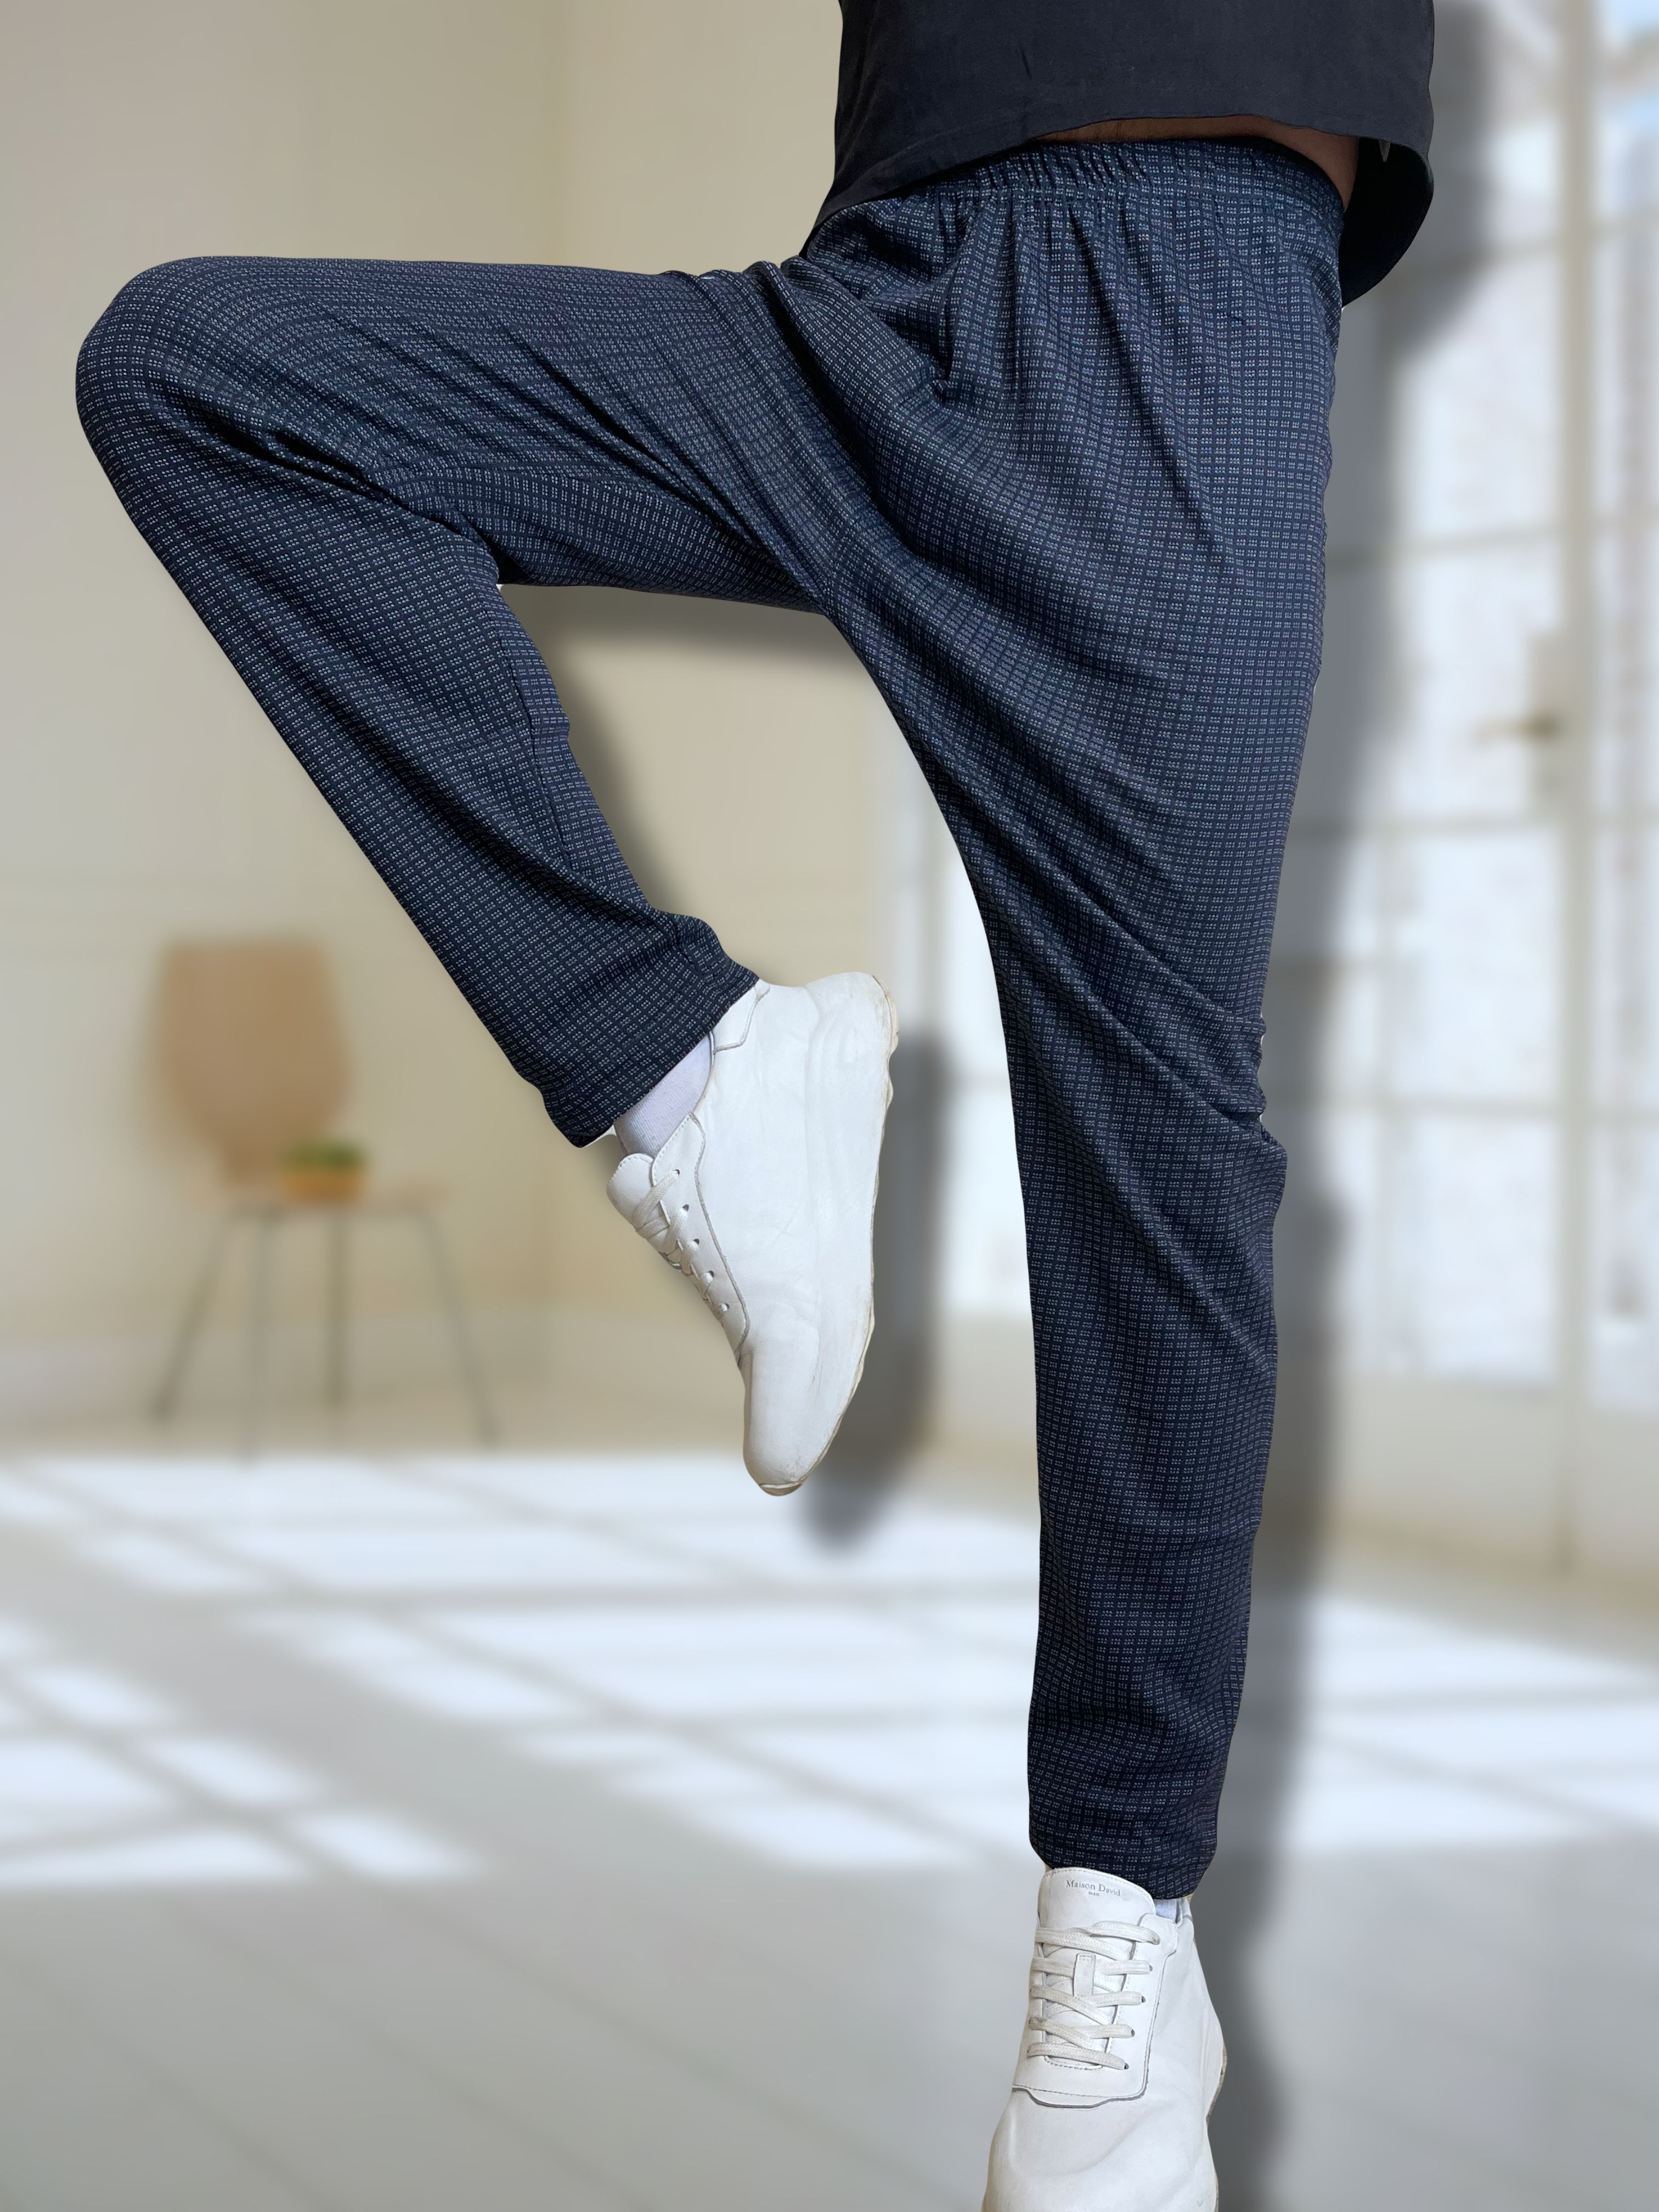 Мужские брюки для быстрой сушки - огромный выбор по лучшим ценам